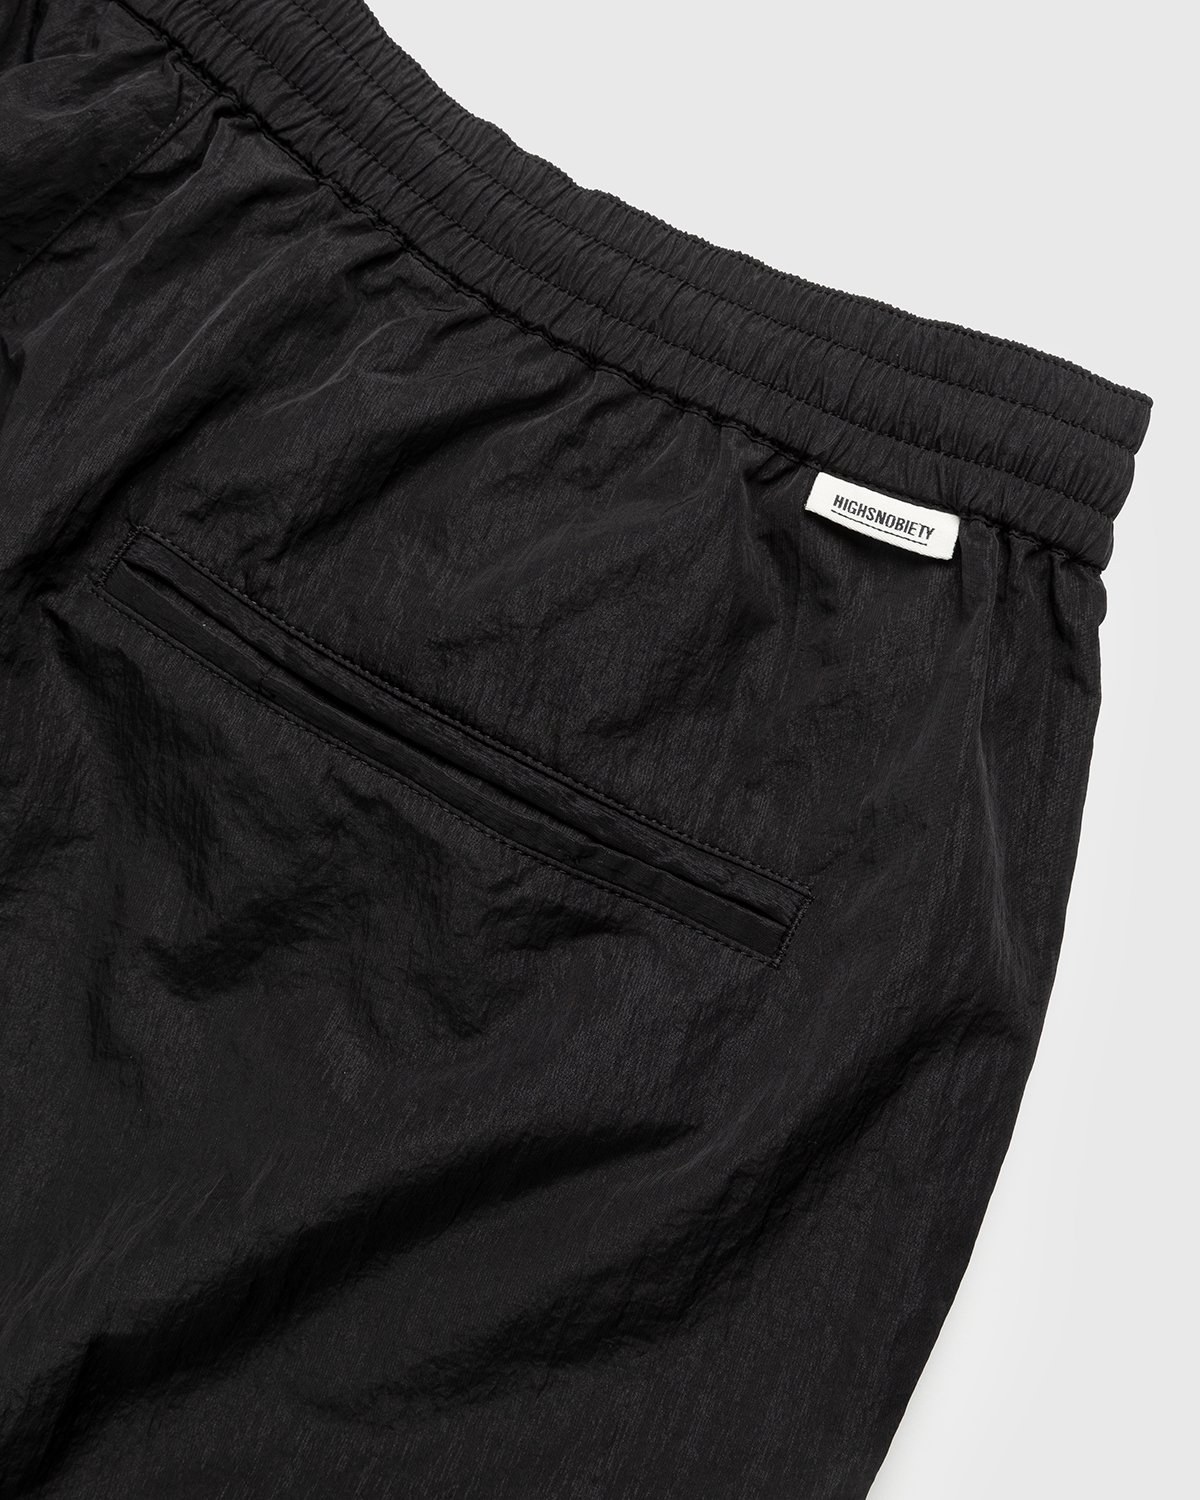 Highsnobiety - Crepe Nylon Shorts Black - Clothing - Black - Image 3